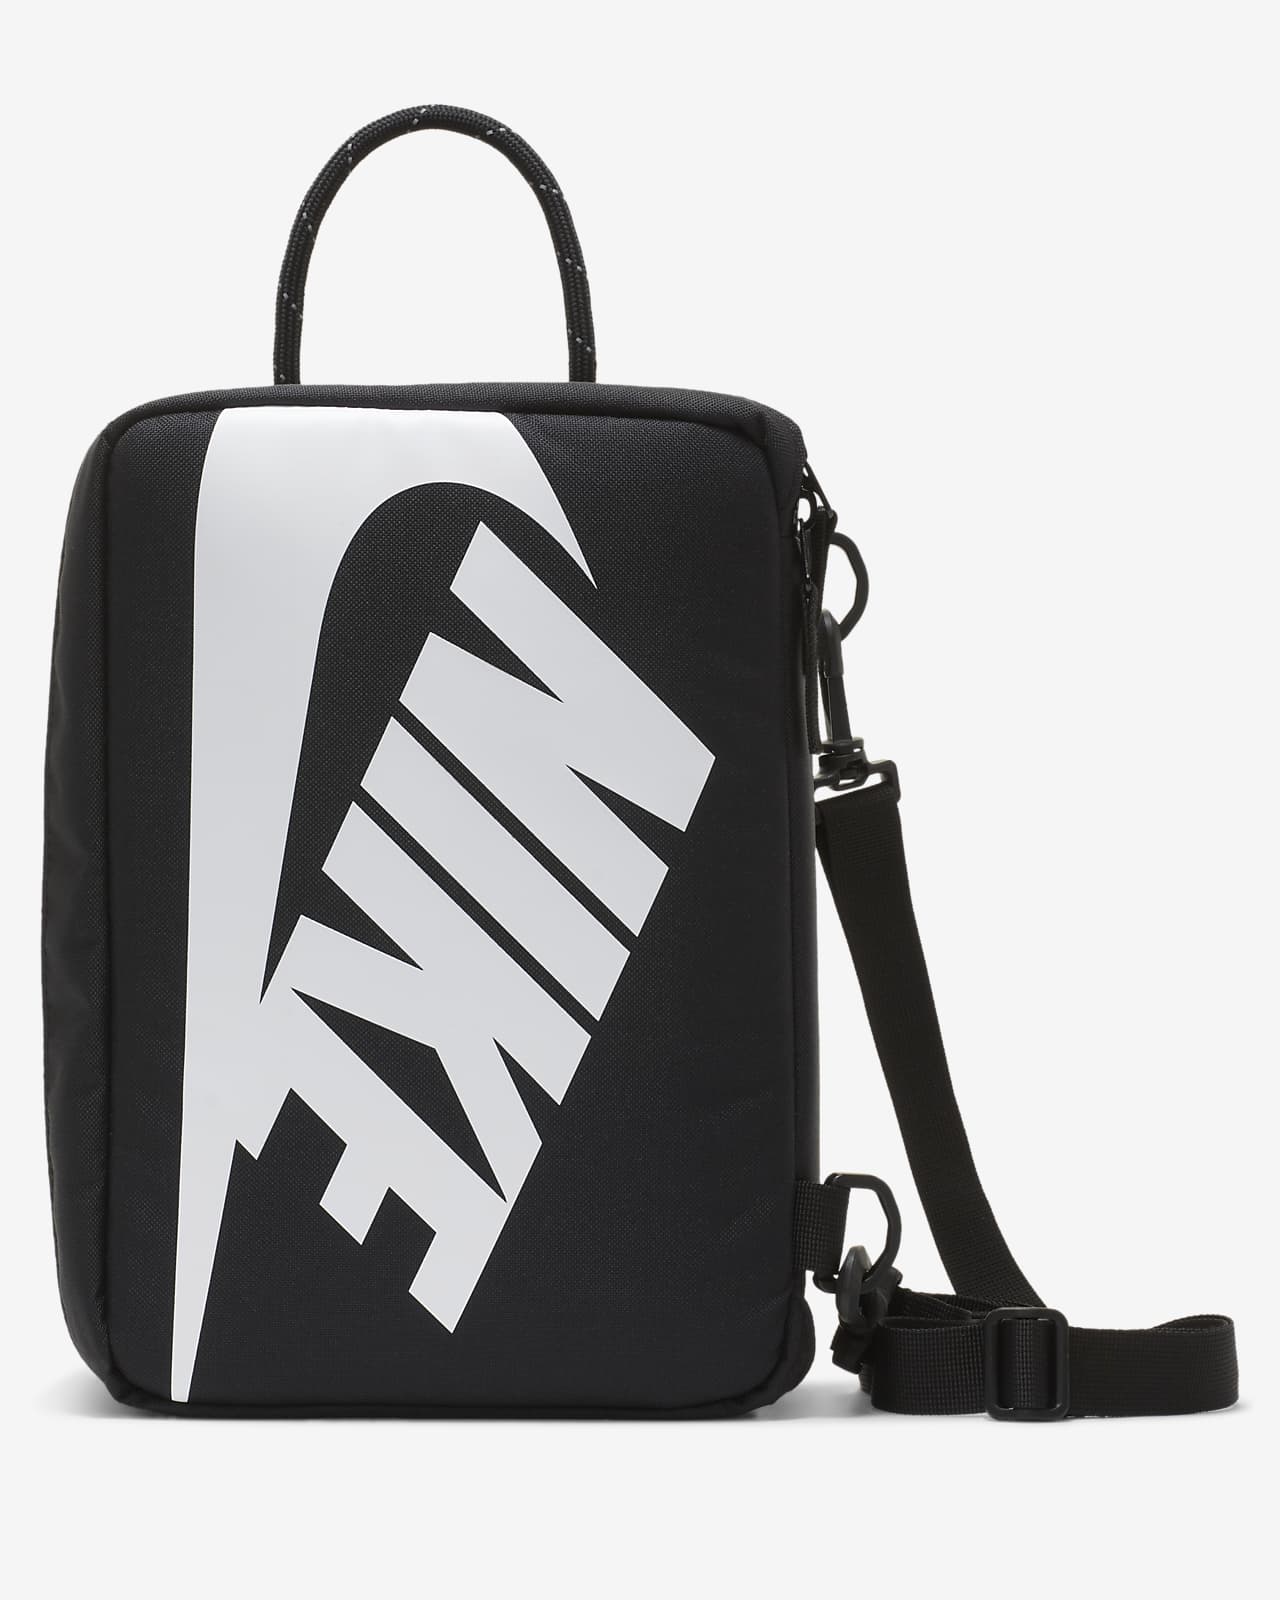 Nike Shoe Box Bag (12L) | lupon.gov.ph